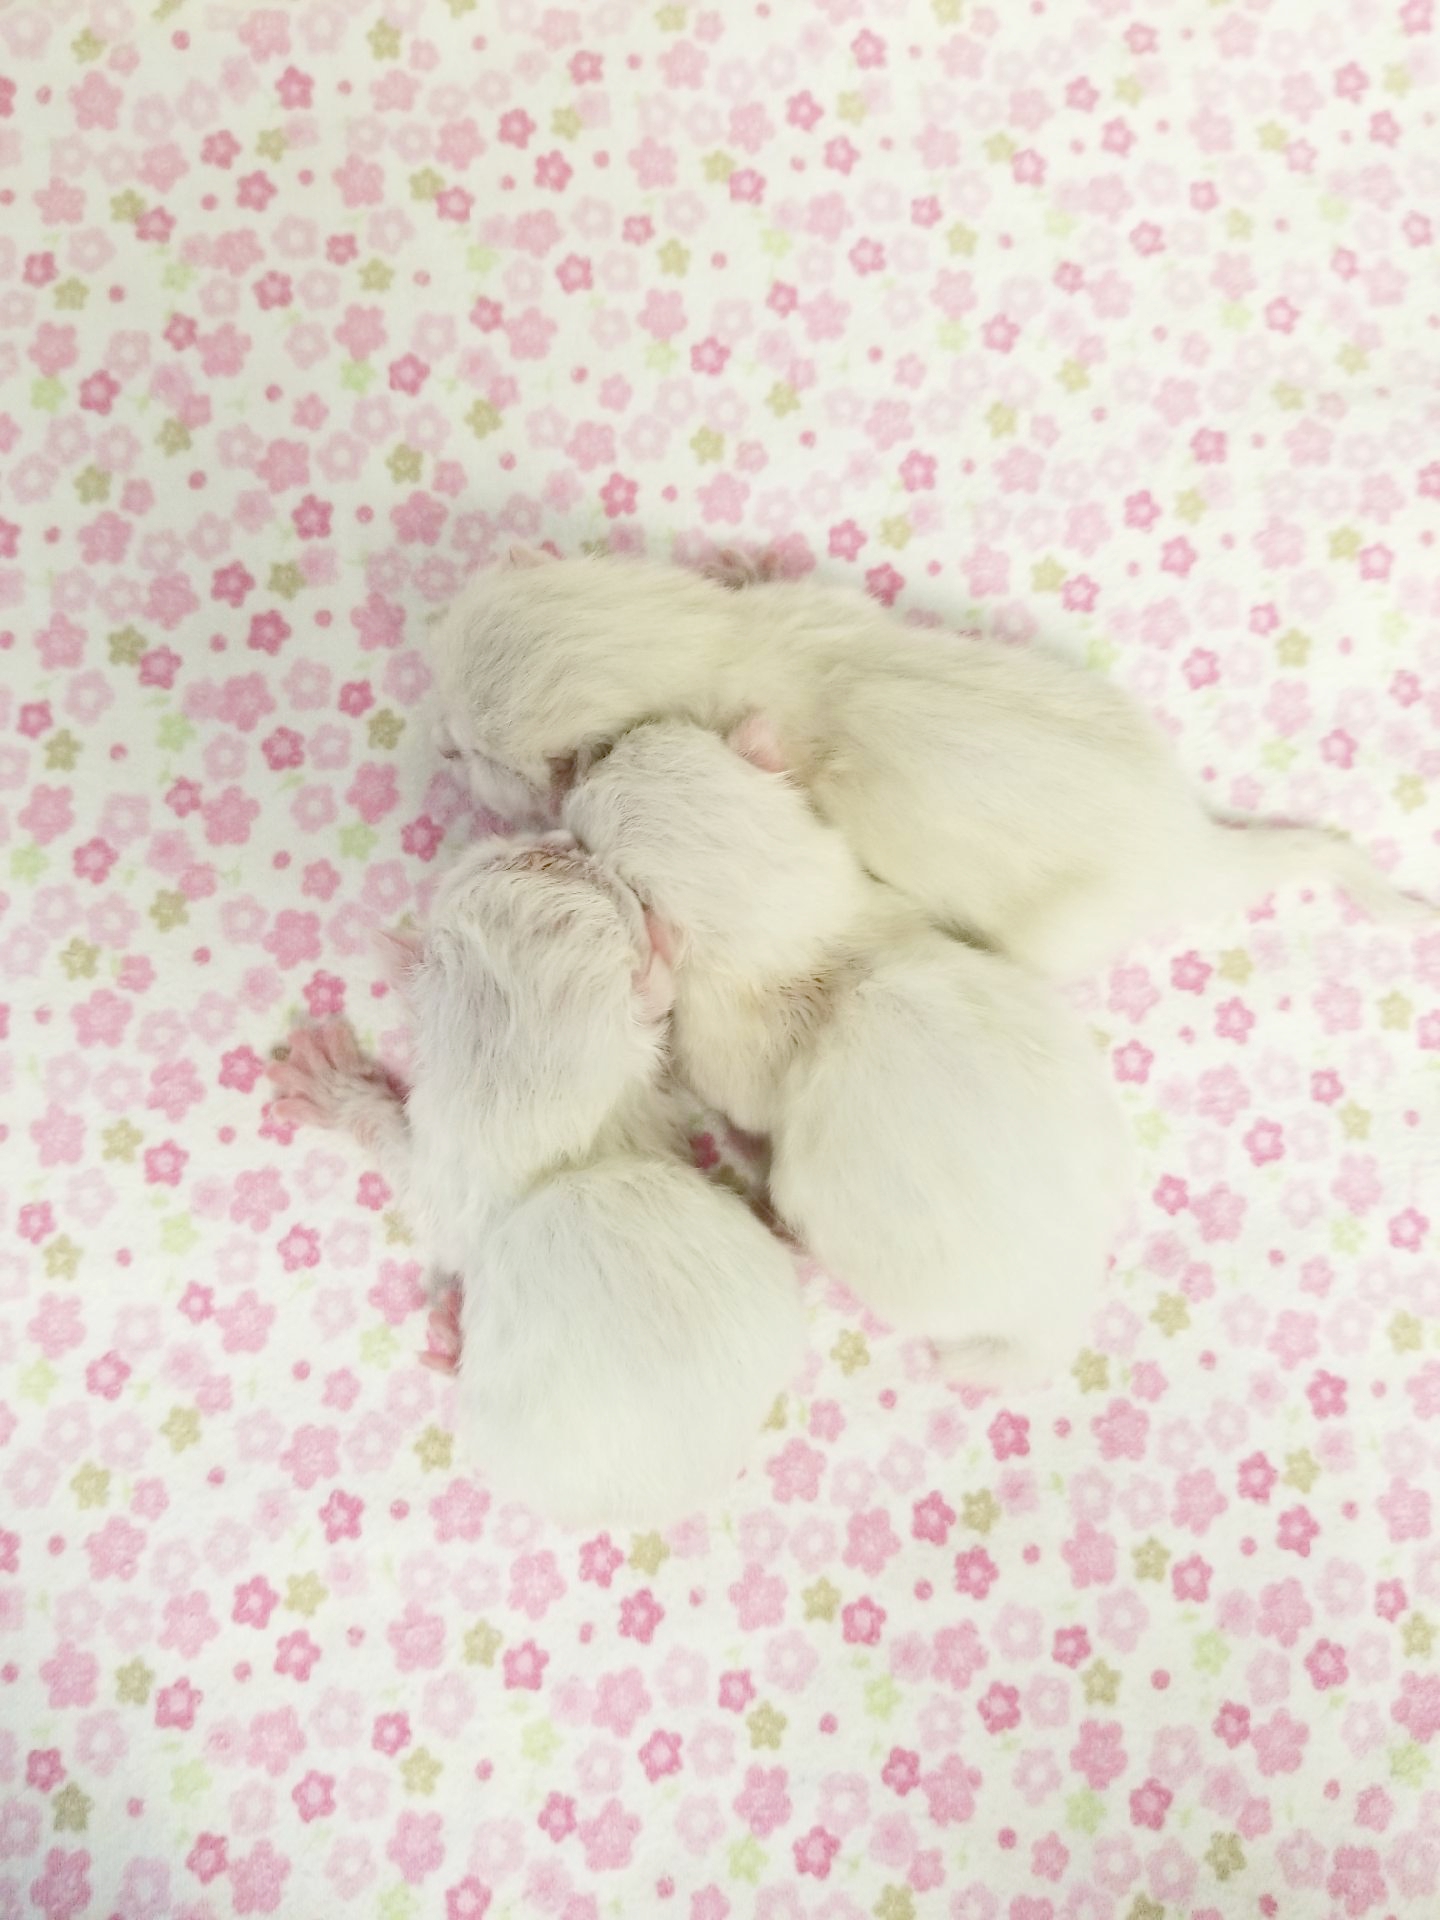 Baby Kittens